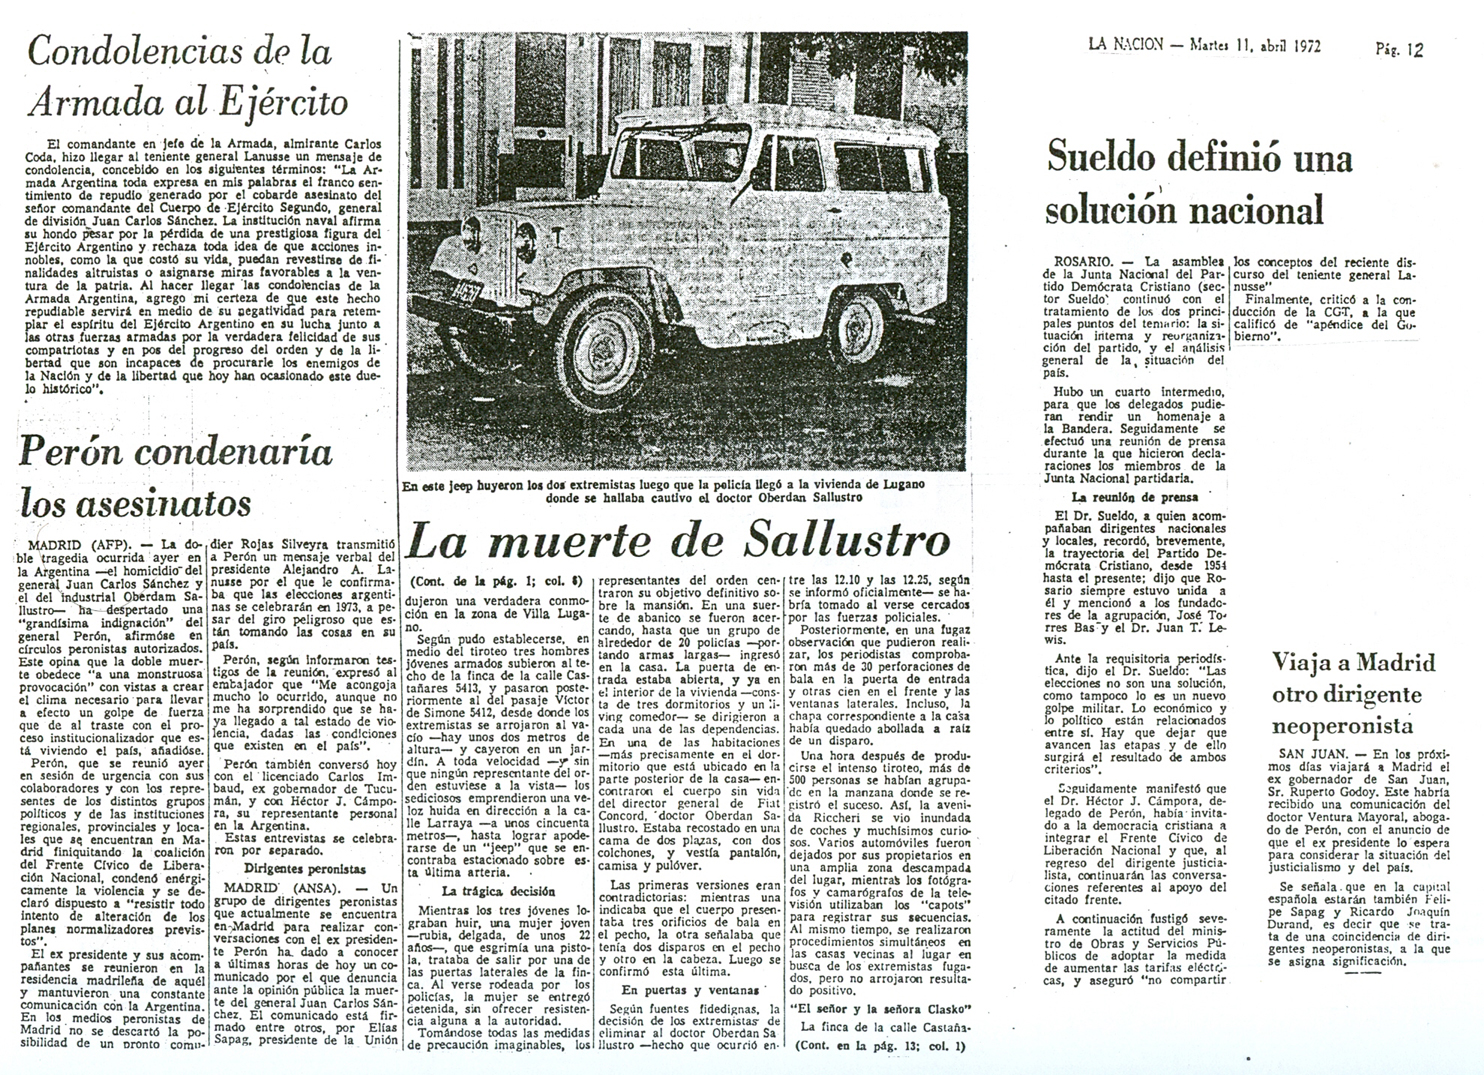 [1972-11-04+La+Nacion+-+Asesinatos+de+gral+Sanchez+y+Dr+Oberdan+Sallustro+10.jpg]